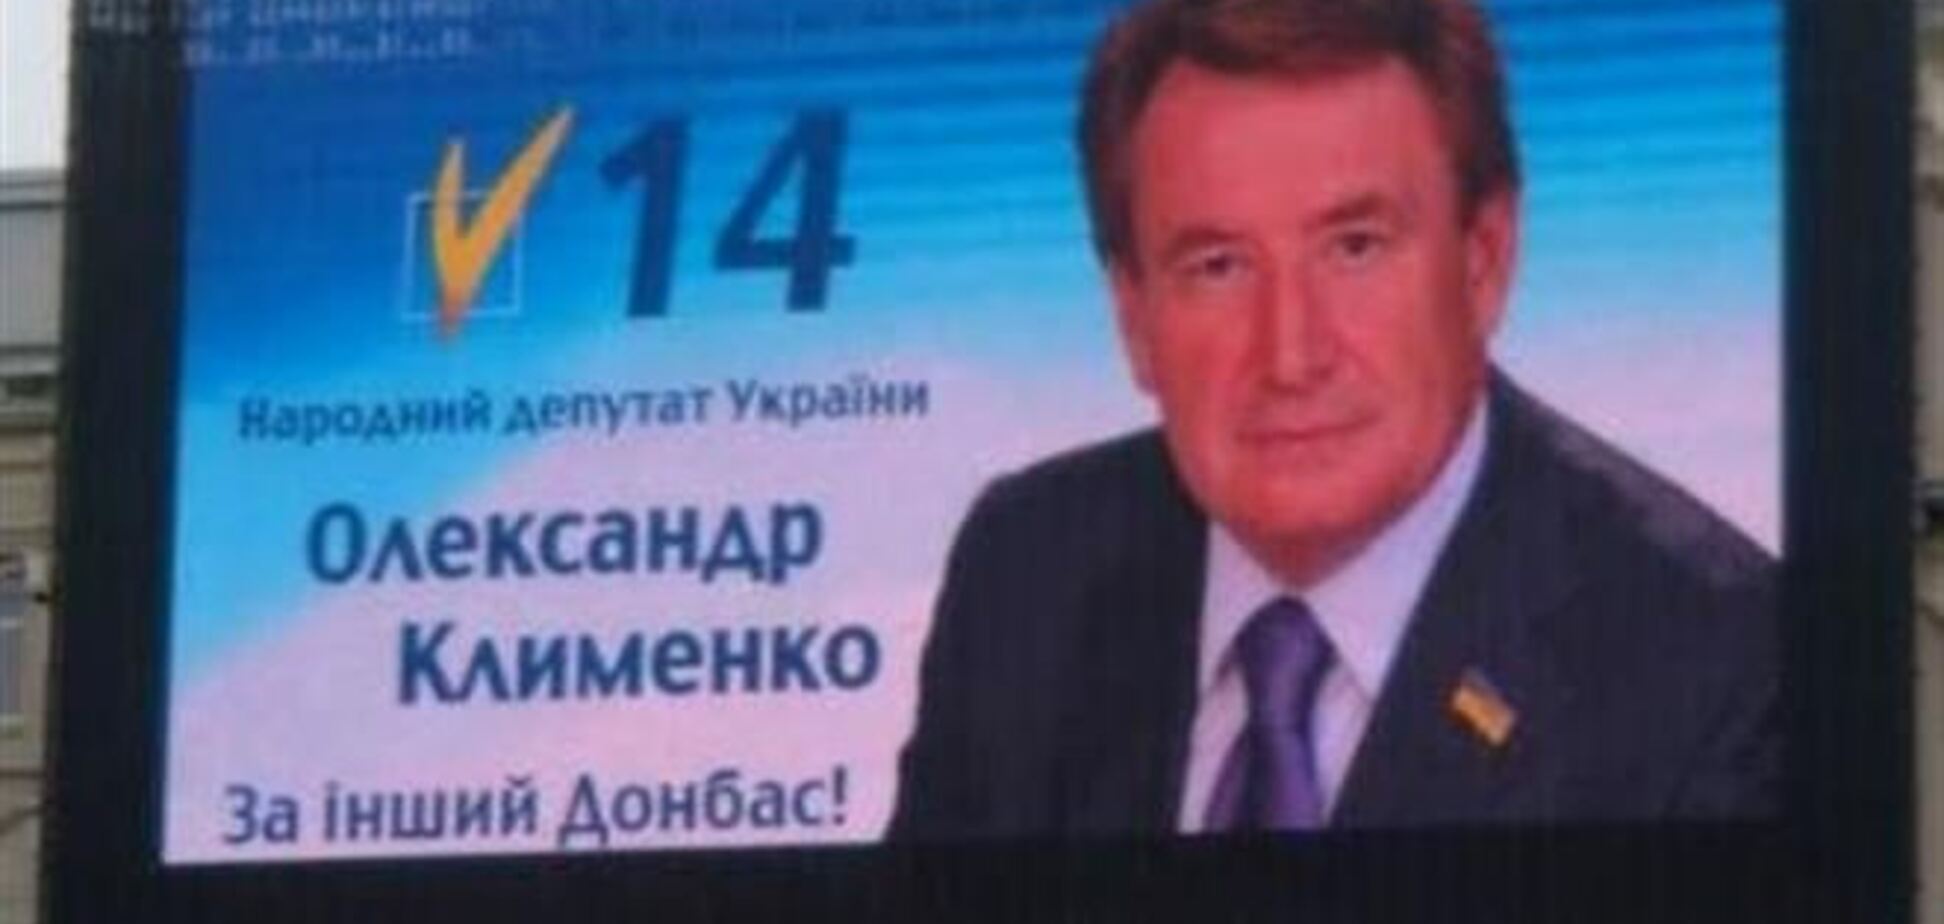 Українську народну партію очолив 'донецький'